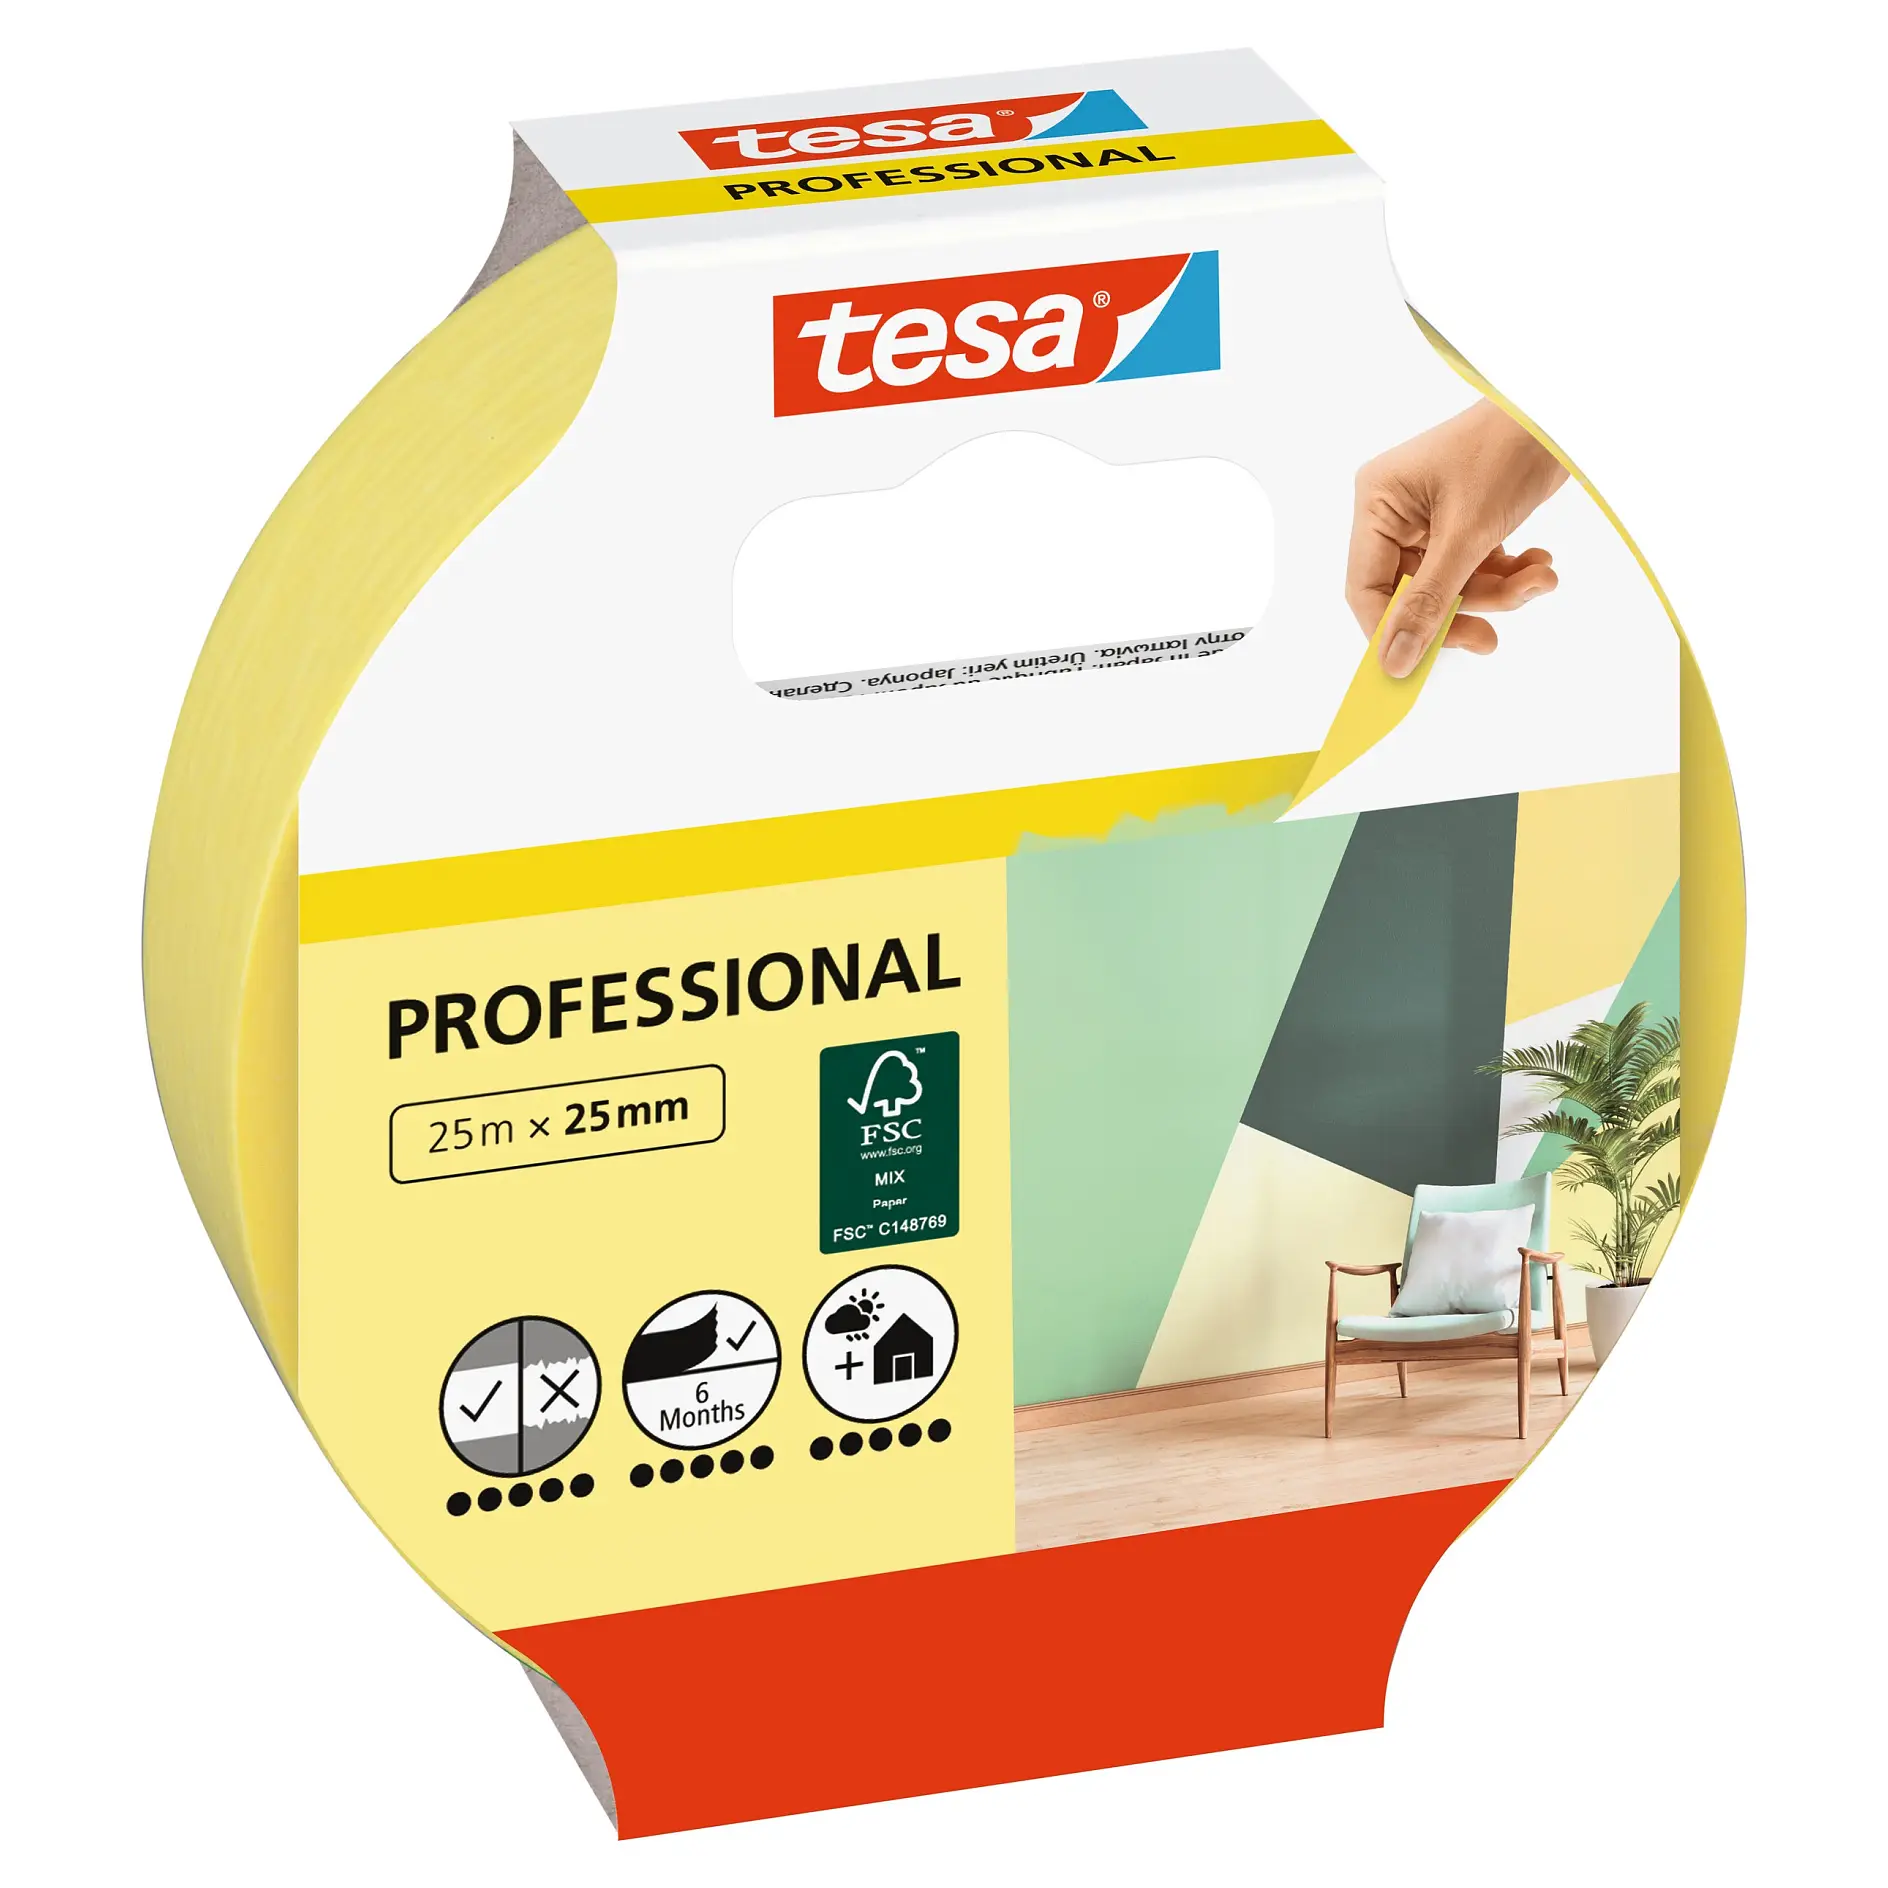 [en-en] tesa Professional, 25m x 25mm (Consumer)